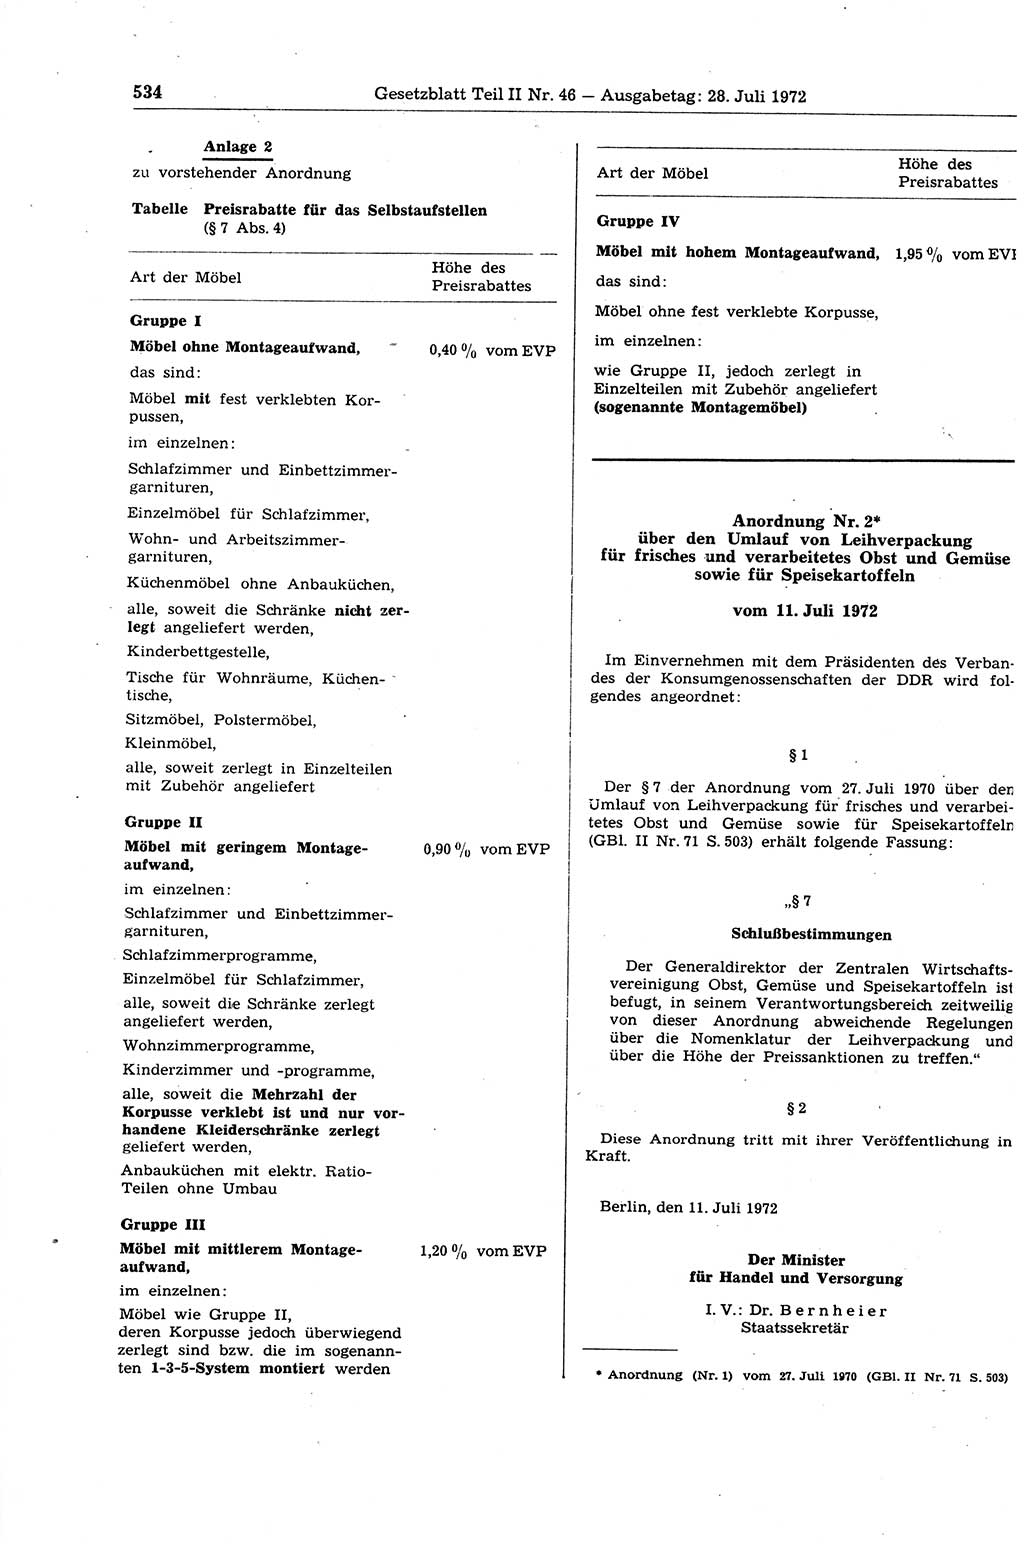 Gesetzblatt (GBl.) der Deutschen Demokratischen Republik (DDR) Teil ⅠⅠ 1972, Seite 534 (GBl. DDR ⅠⅠ 1972, S. 534)